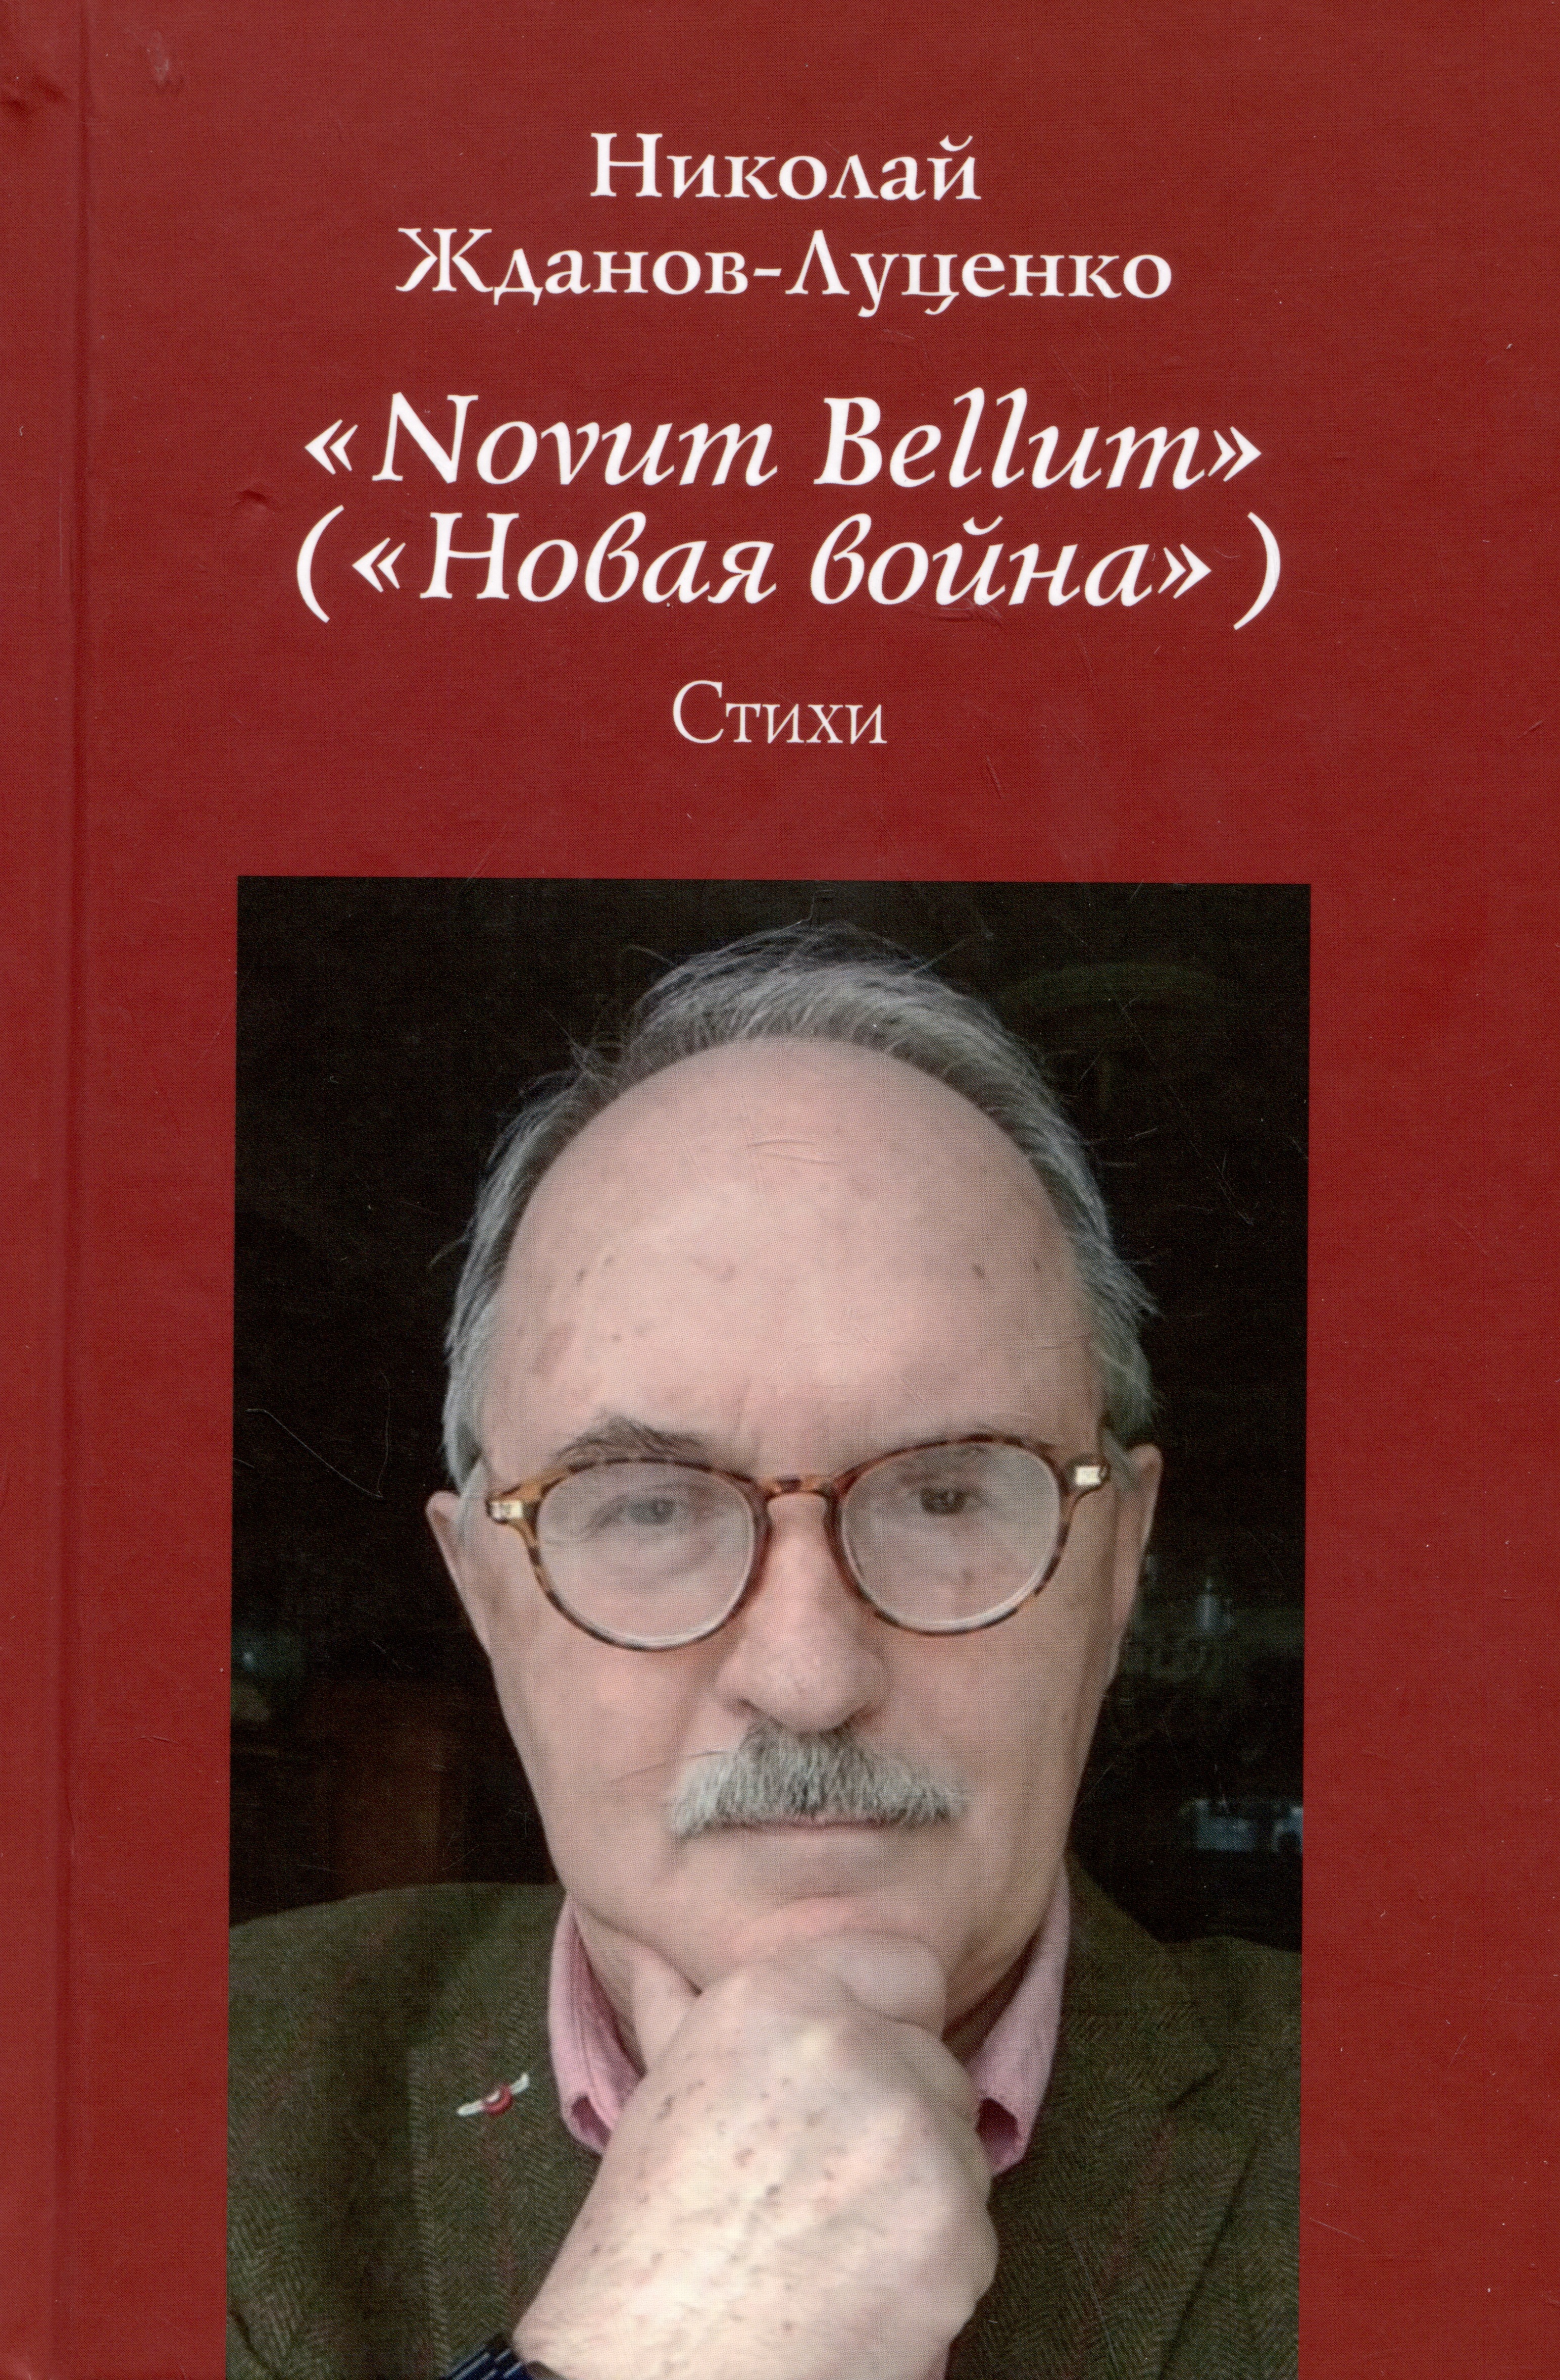 Novum Bellum / Новая война. Стихи